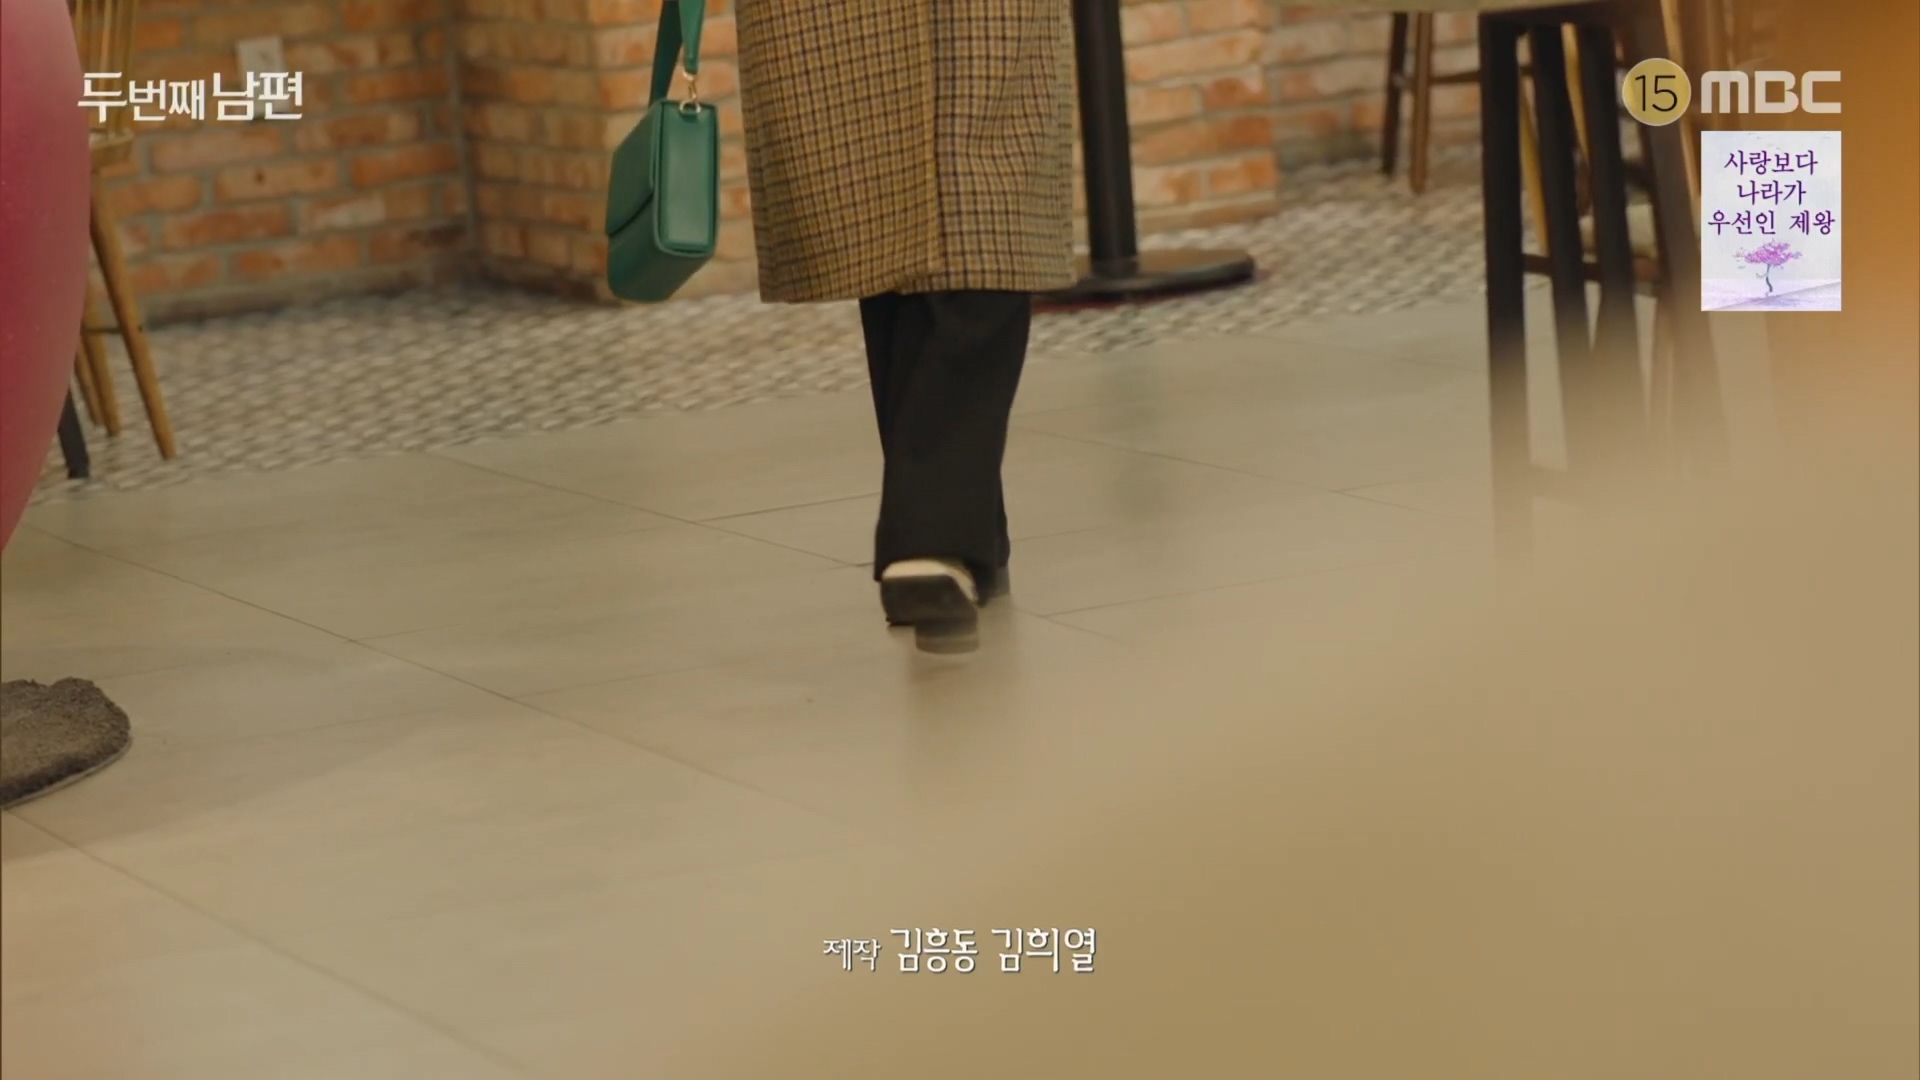 BBYB 엄현경 두 번째 남편 70회 착용 가방 (비비와이비 릴리백)